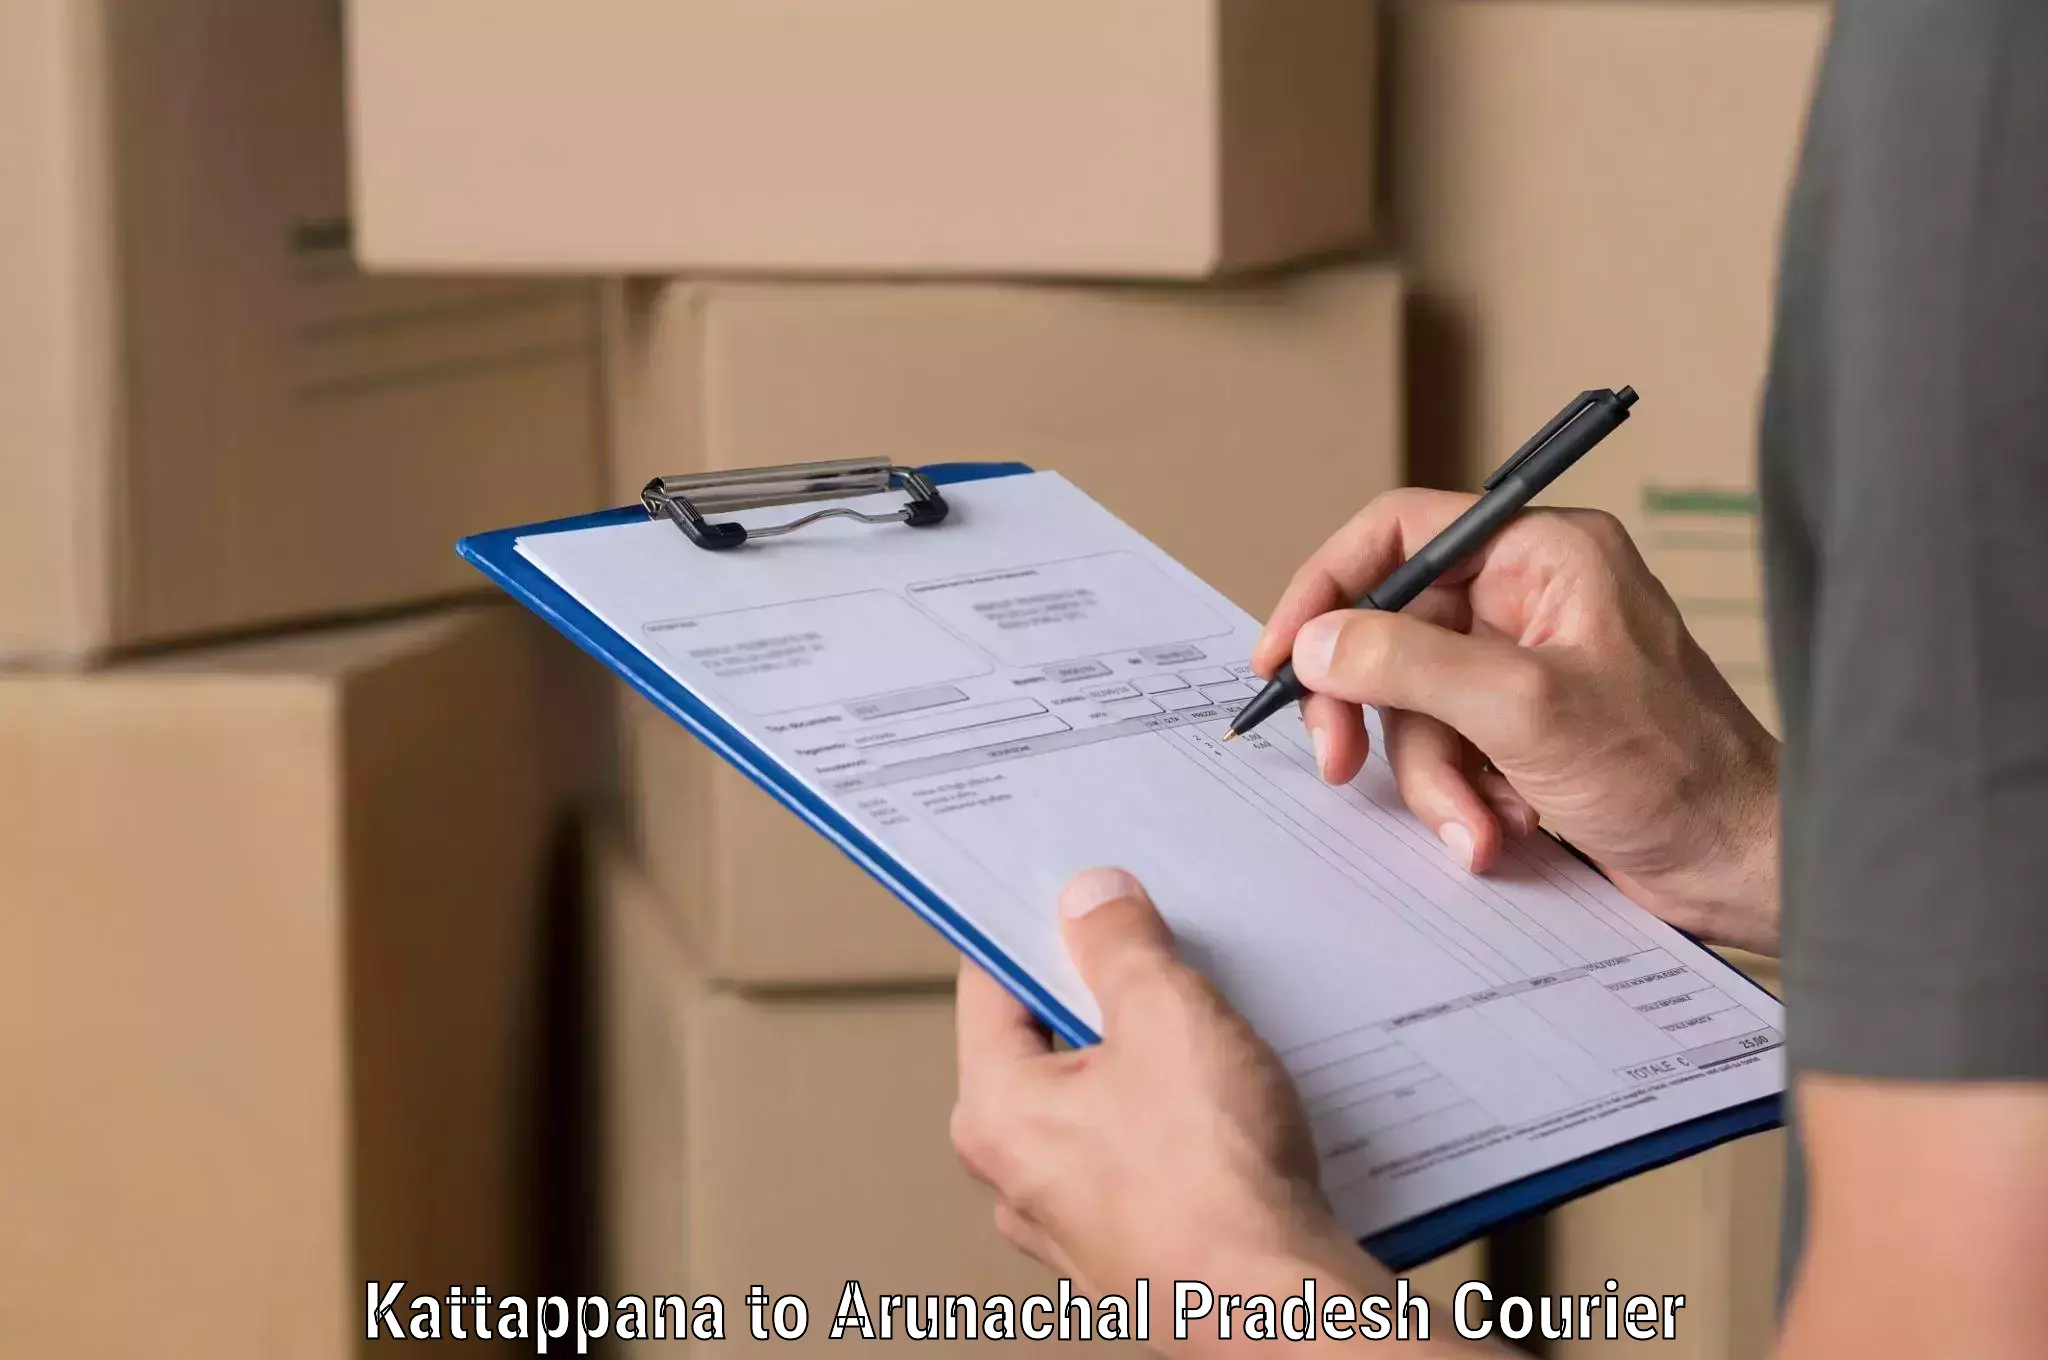 Urgent courier needs in Kattappana to Arunachal Pradesh